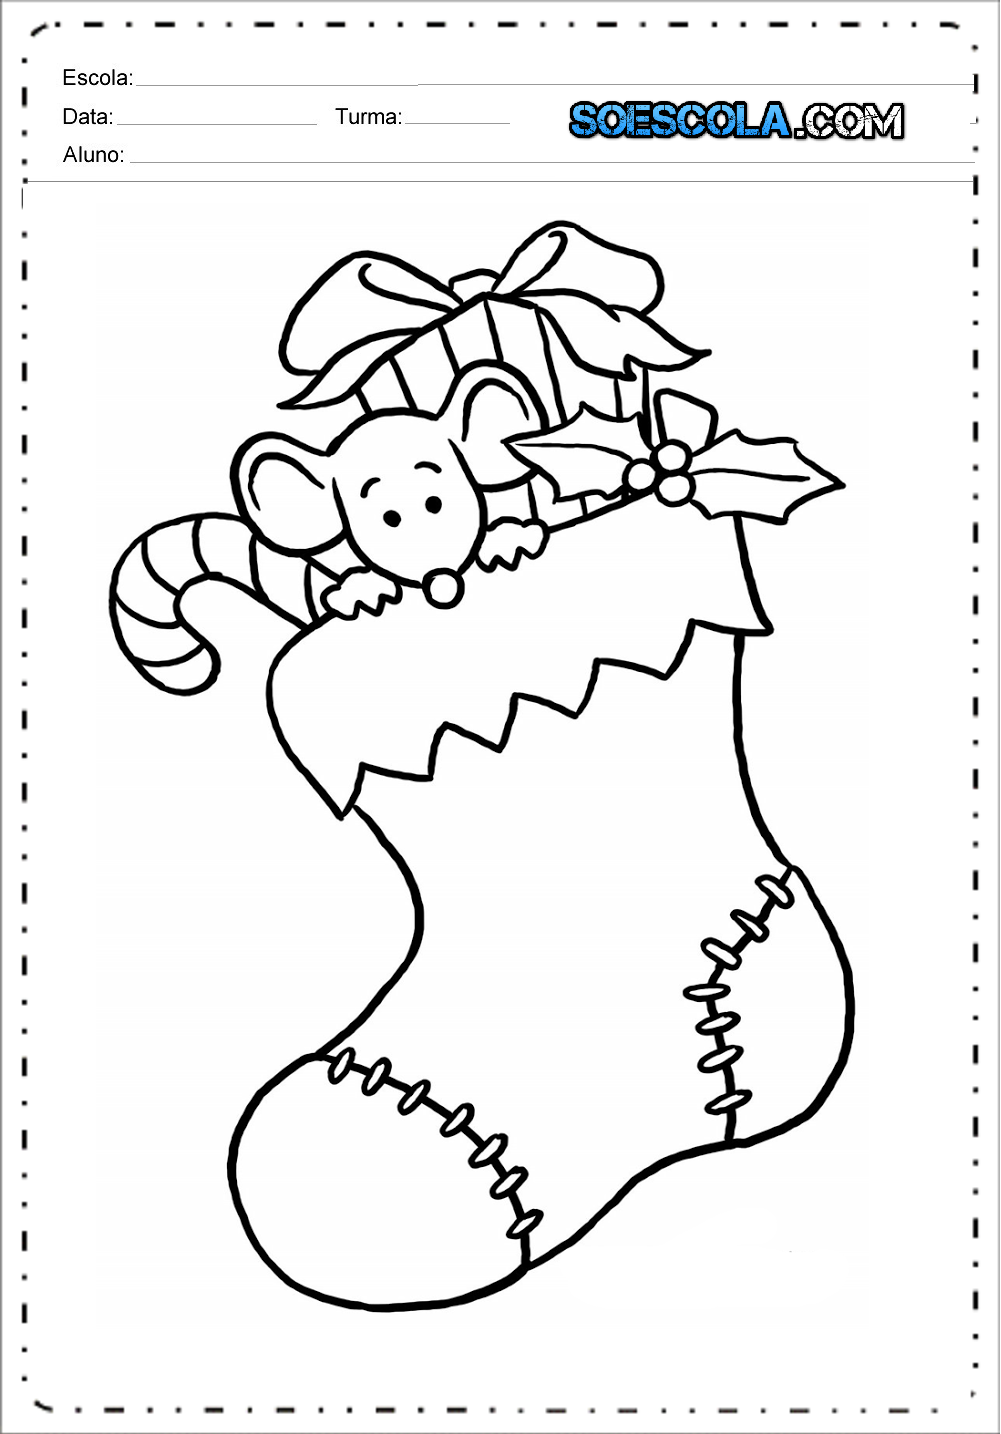 Desenhos de natal para colorir e imprimir – Desenhos Natalinos